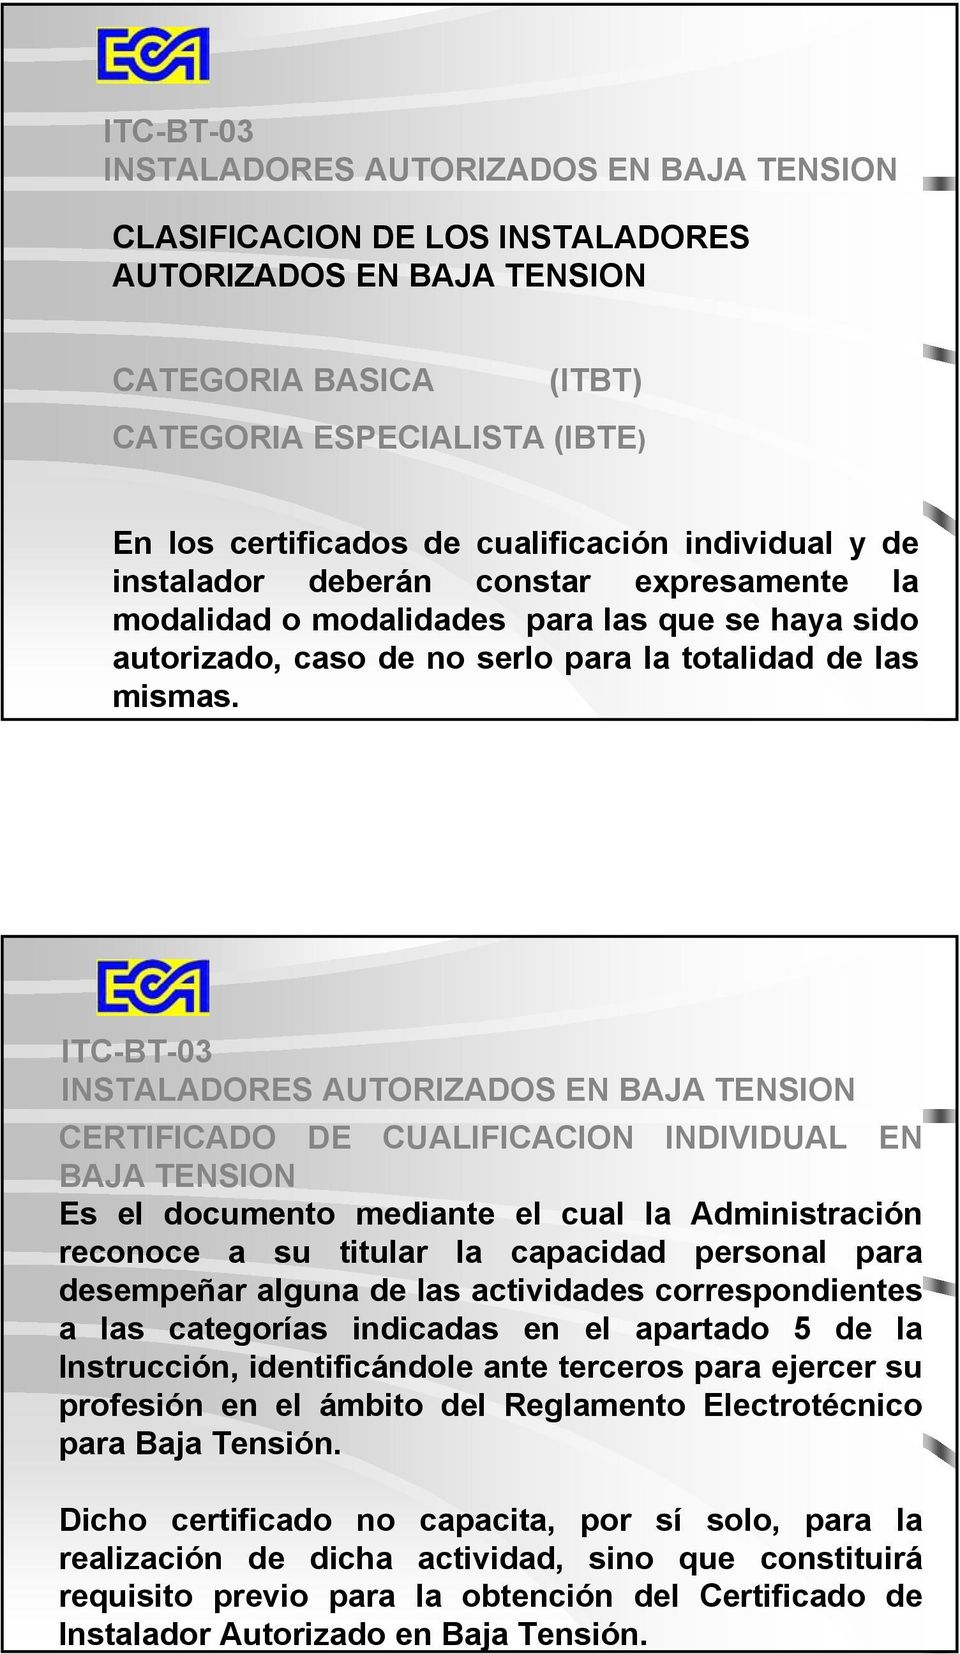 ITC-BT-03 INSTALADORES AUTORIZADOS EN BAJA TENSION CERTIFICADO DE CUALIFICACION INDIVIDUAL EN BAJA TENSION Es el documento mediante el cual la Administración reconoce a su titular la capacidad